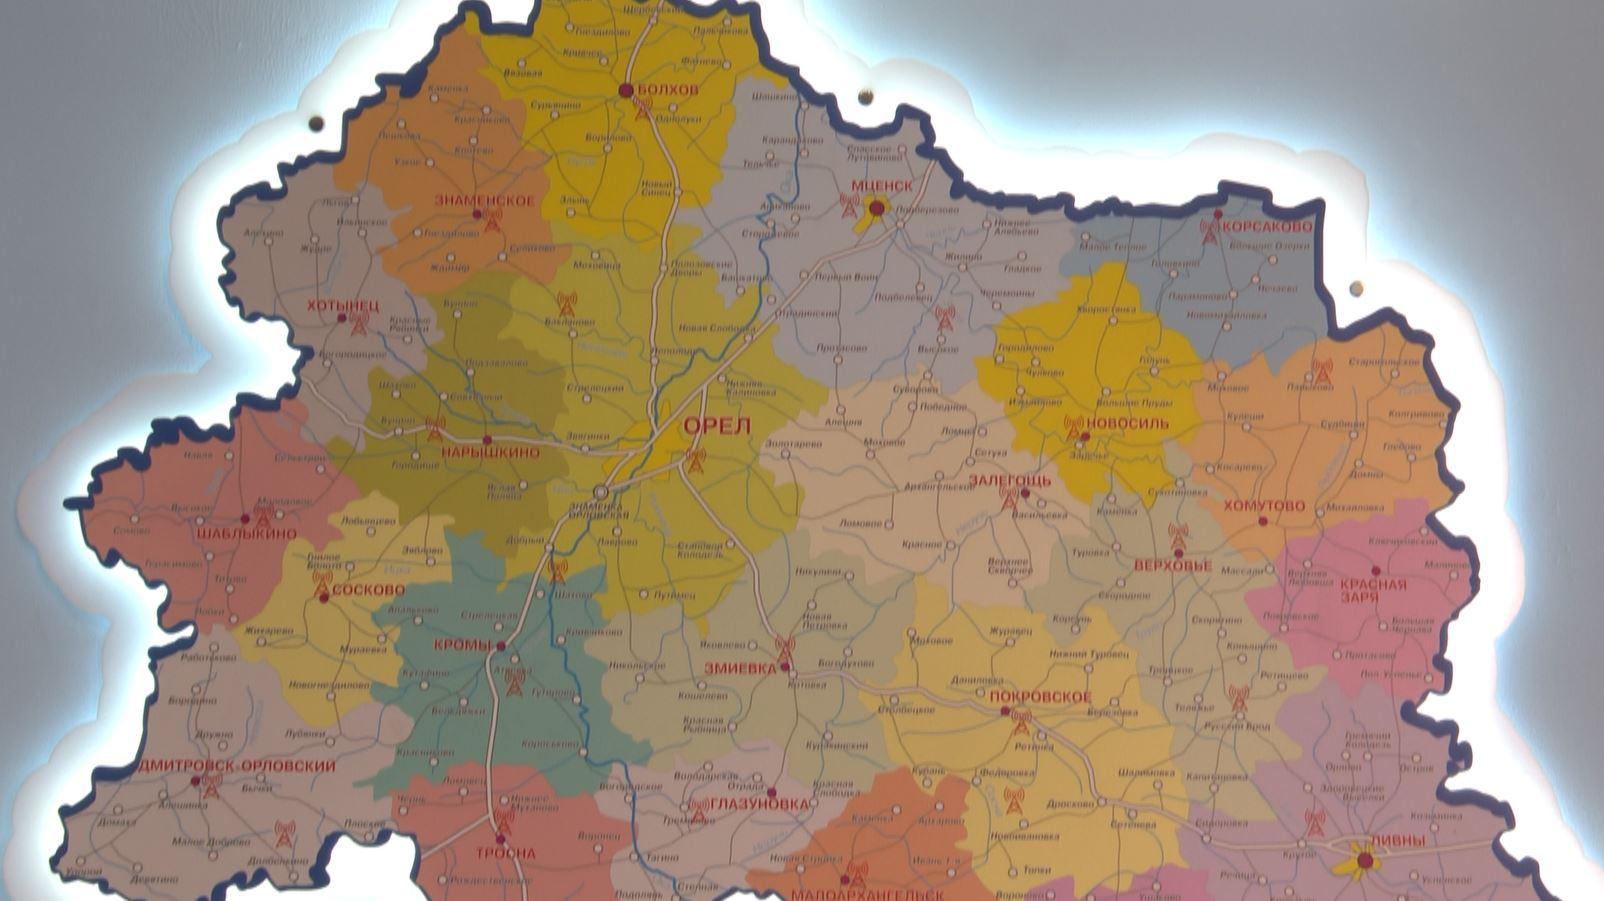 Орловских студентов приглашают собрать карту России и Орловской области